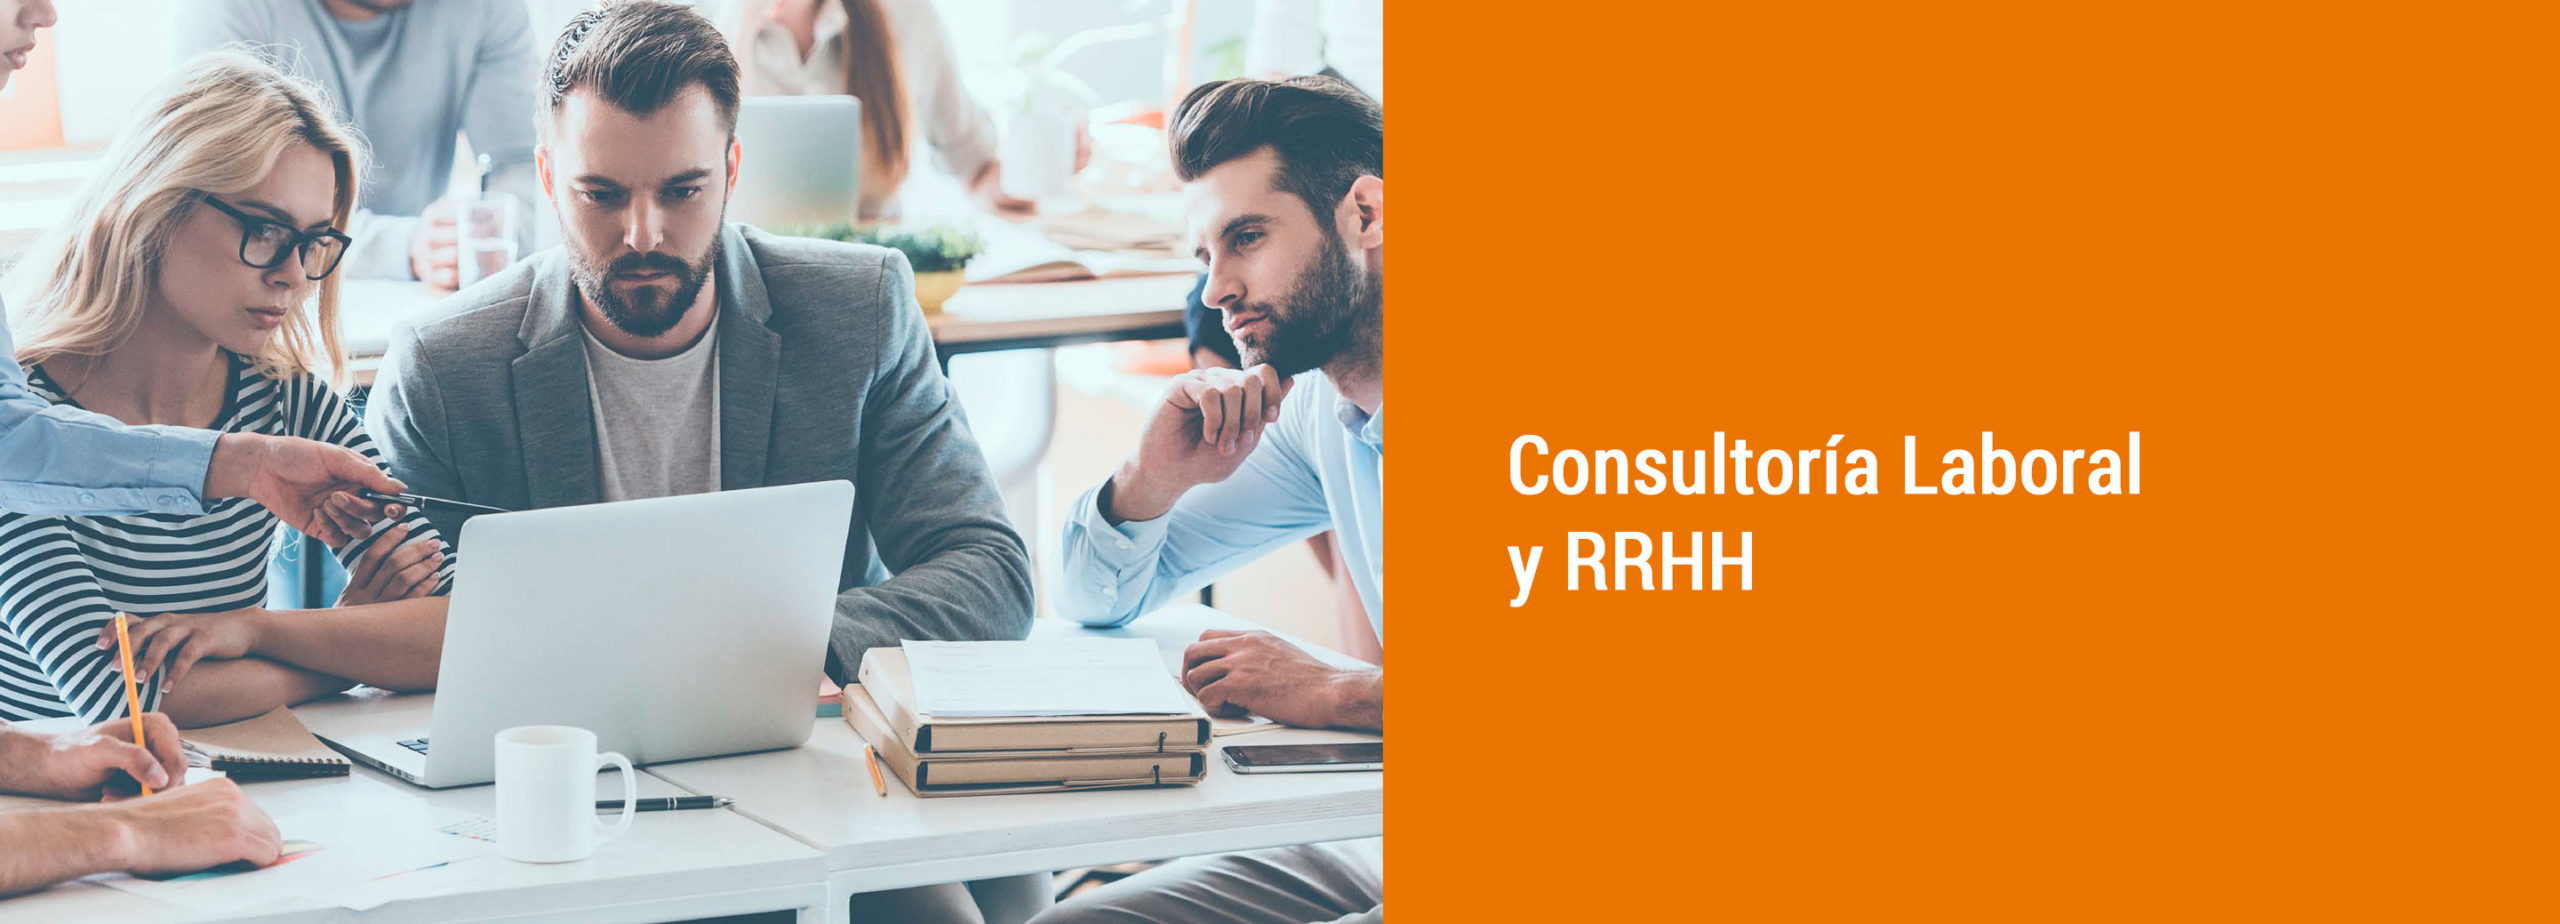 Consultoría Laboral y RRHH - tu opción legal